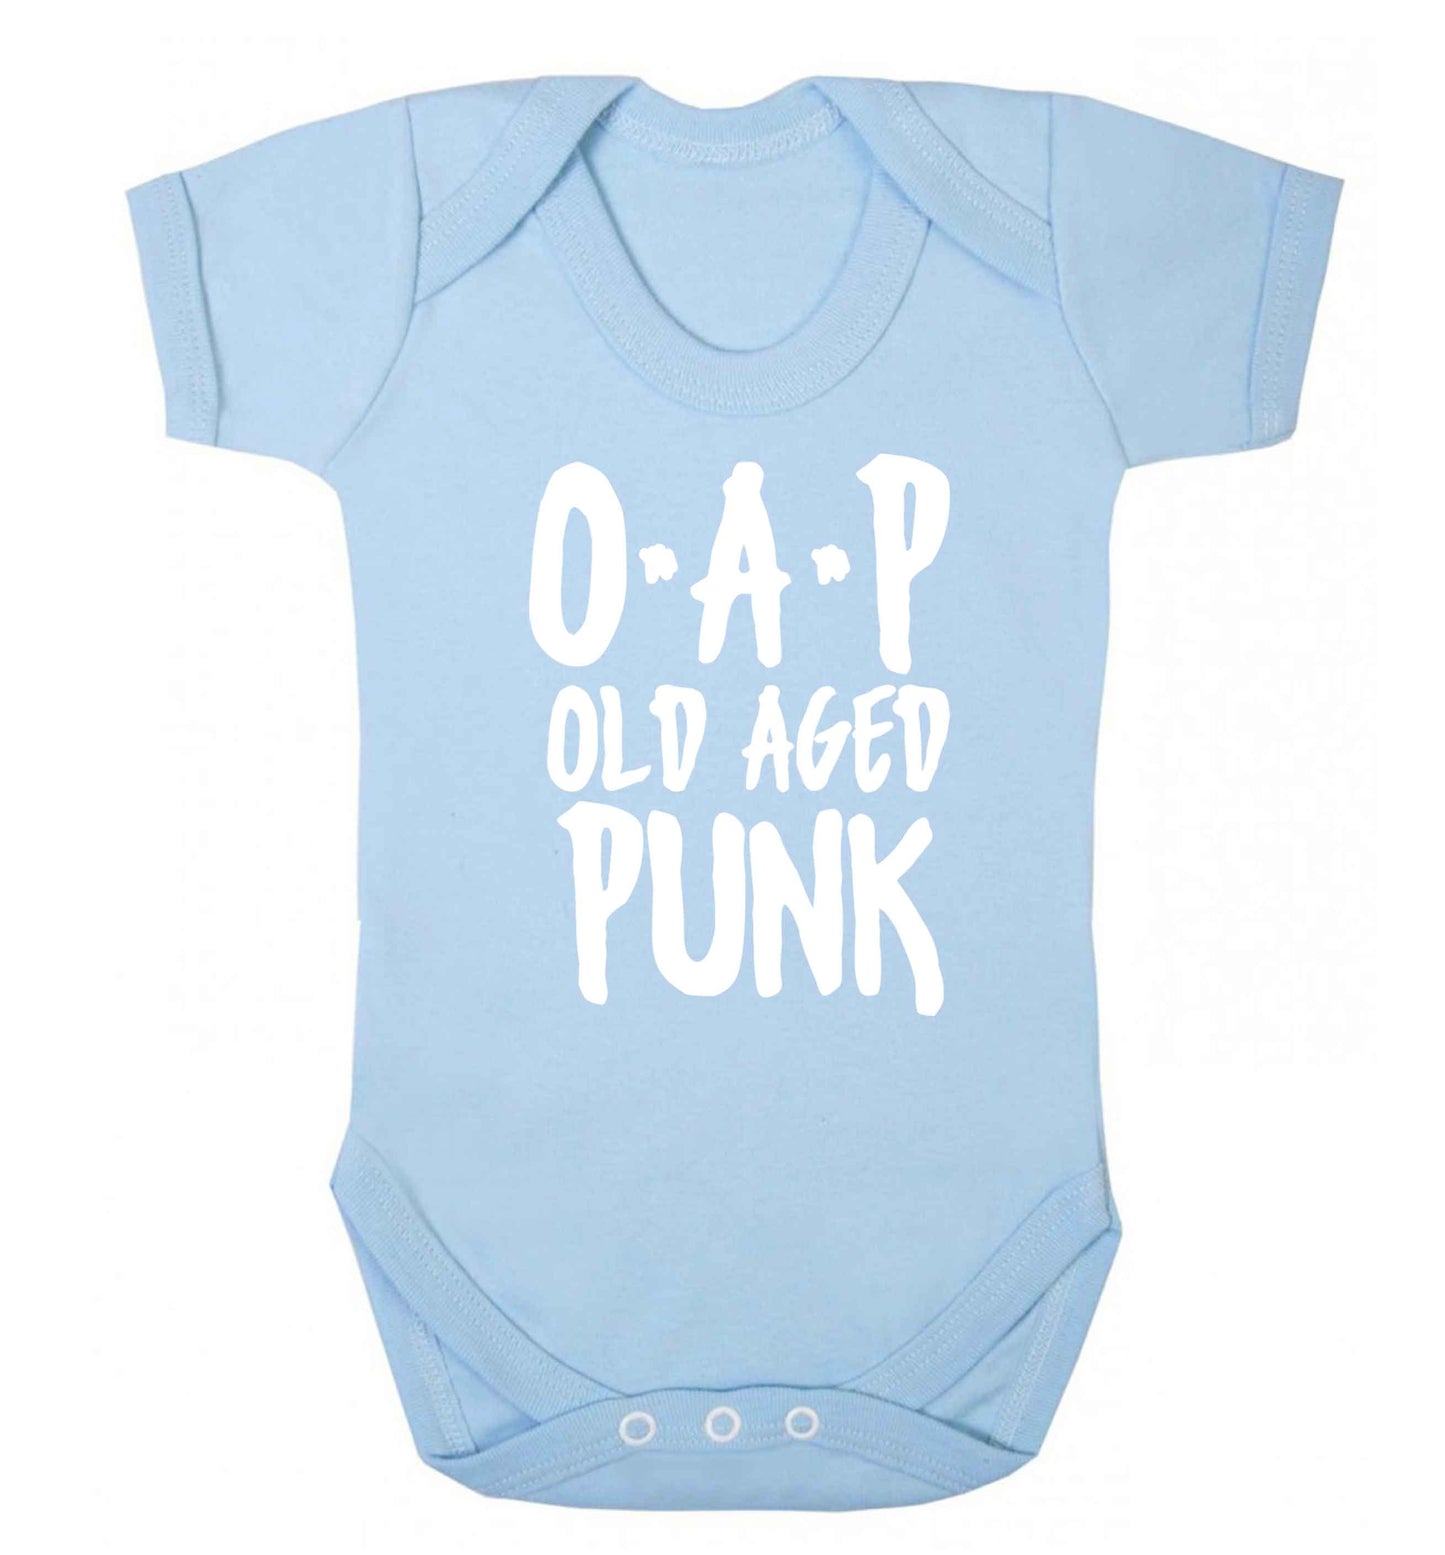 O.A.P Old Age Punk Baby Vest pale blue 18-24 months